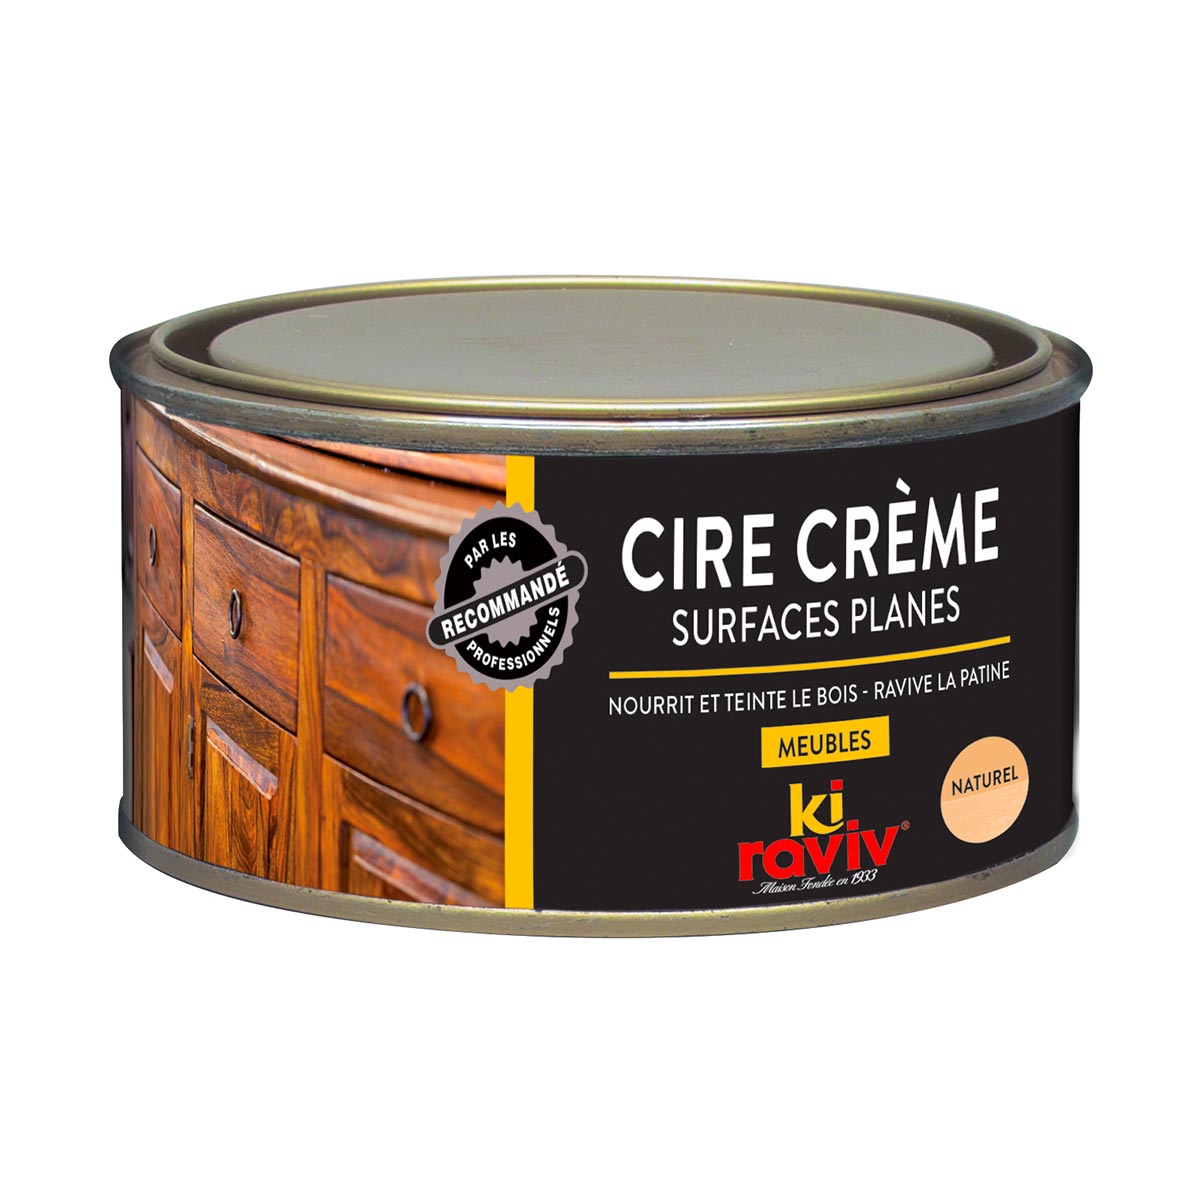 Cire crème surfaces planes - Kiraviv